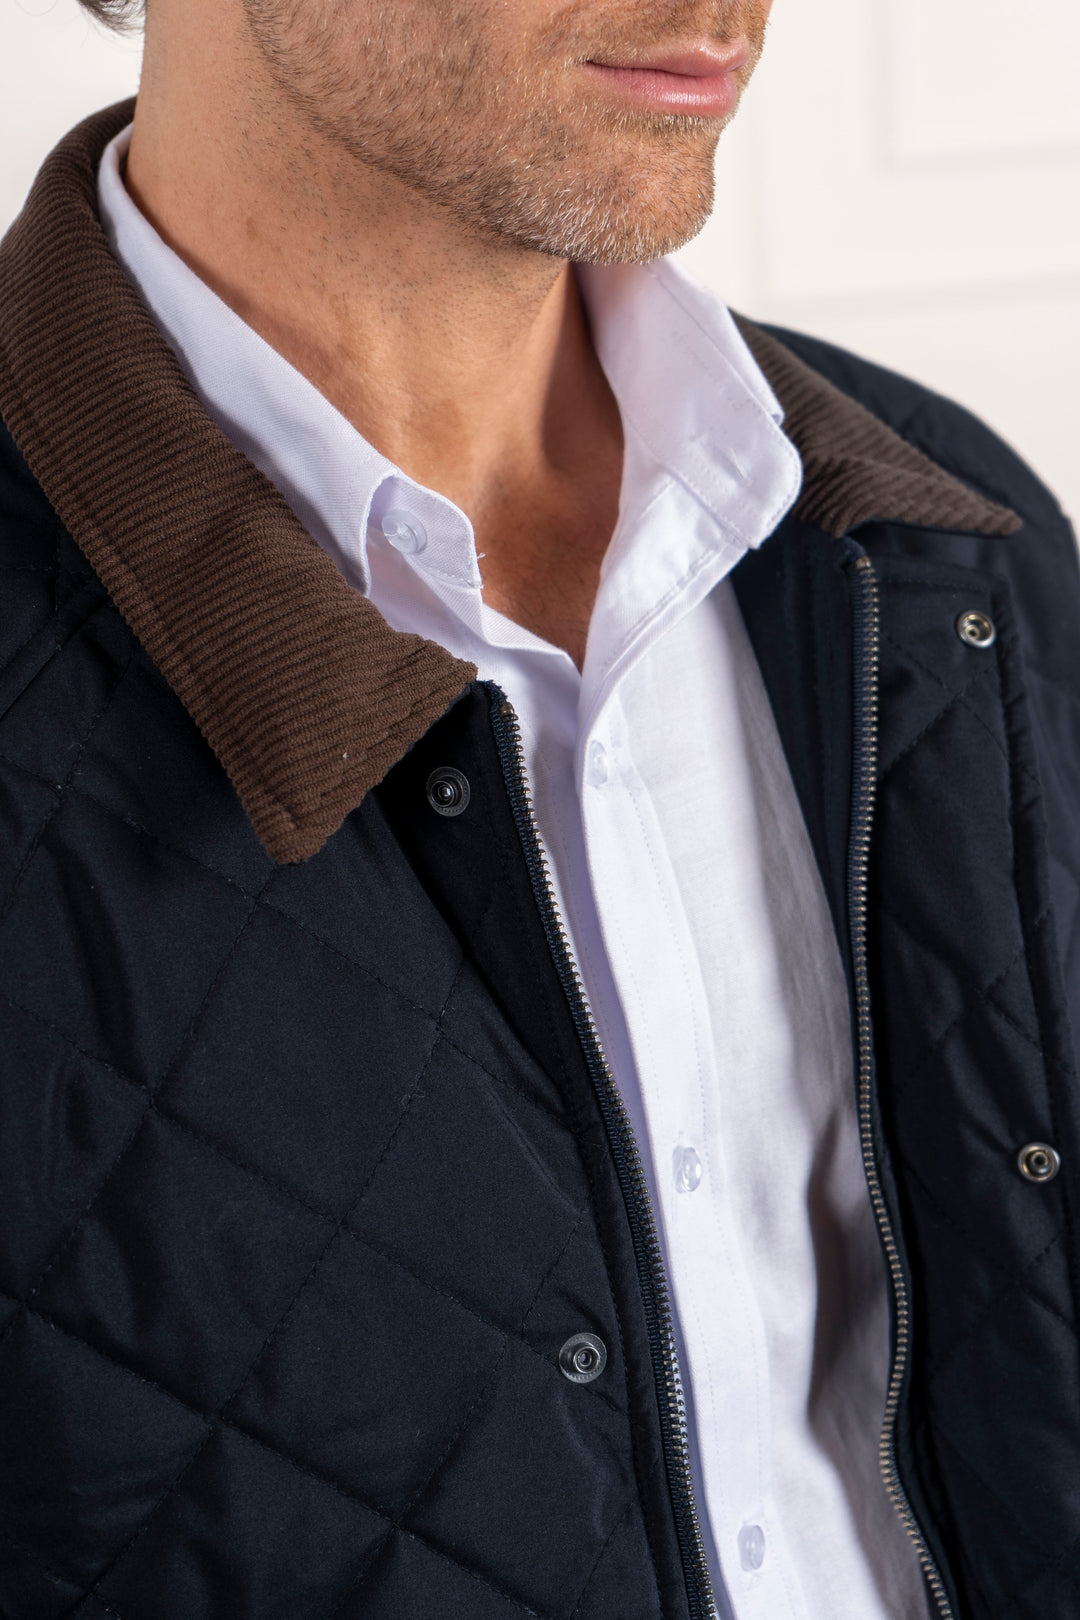 Detalle del cuello de la chaqueta, combinada junto con una camisa blanca. Cierre de cremallera y botones.